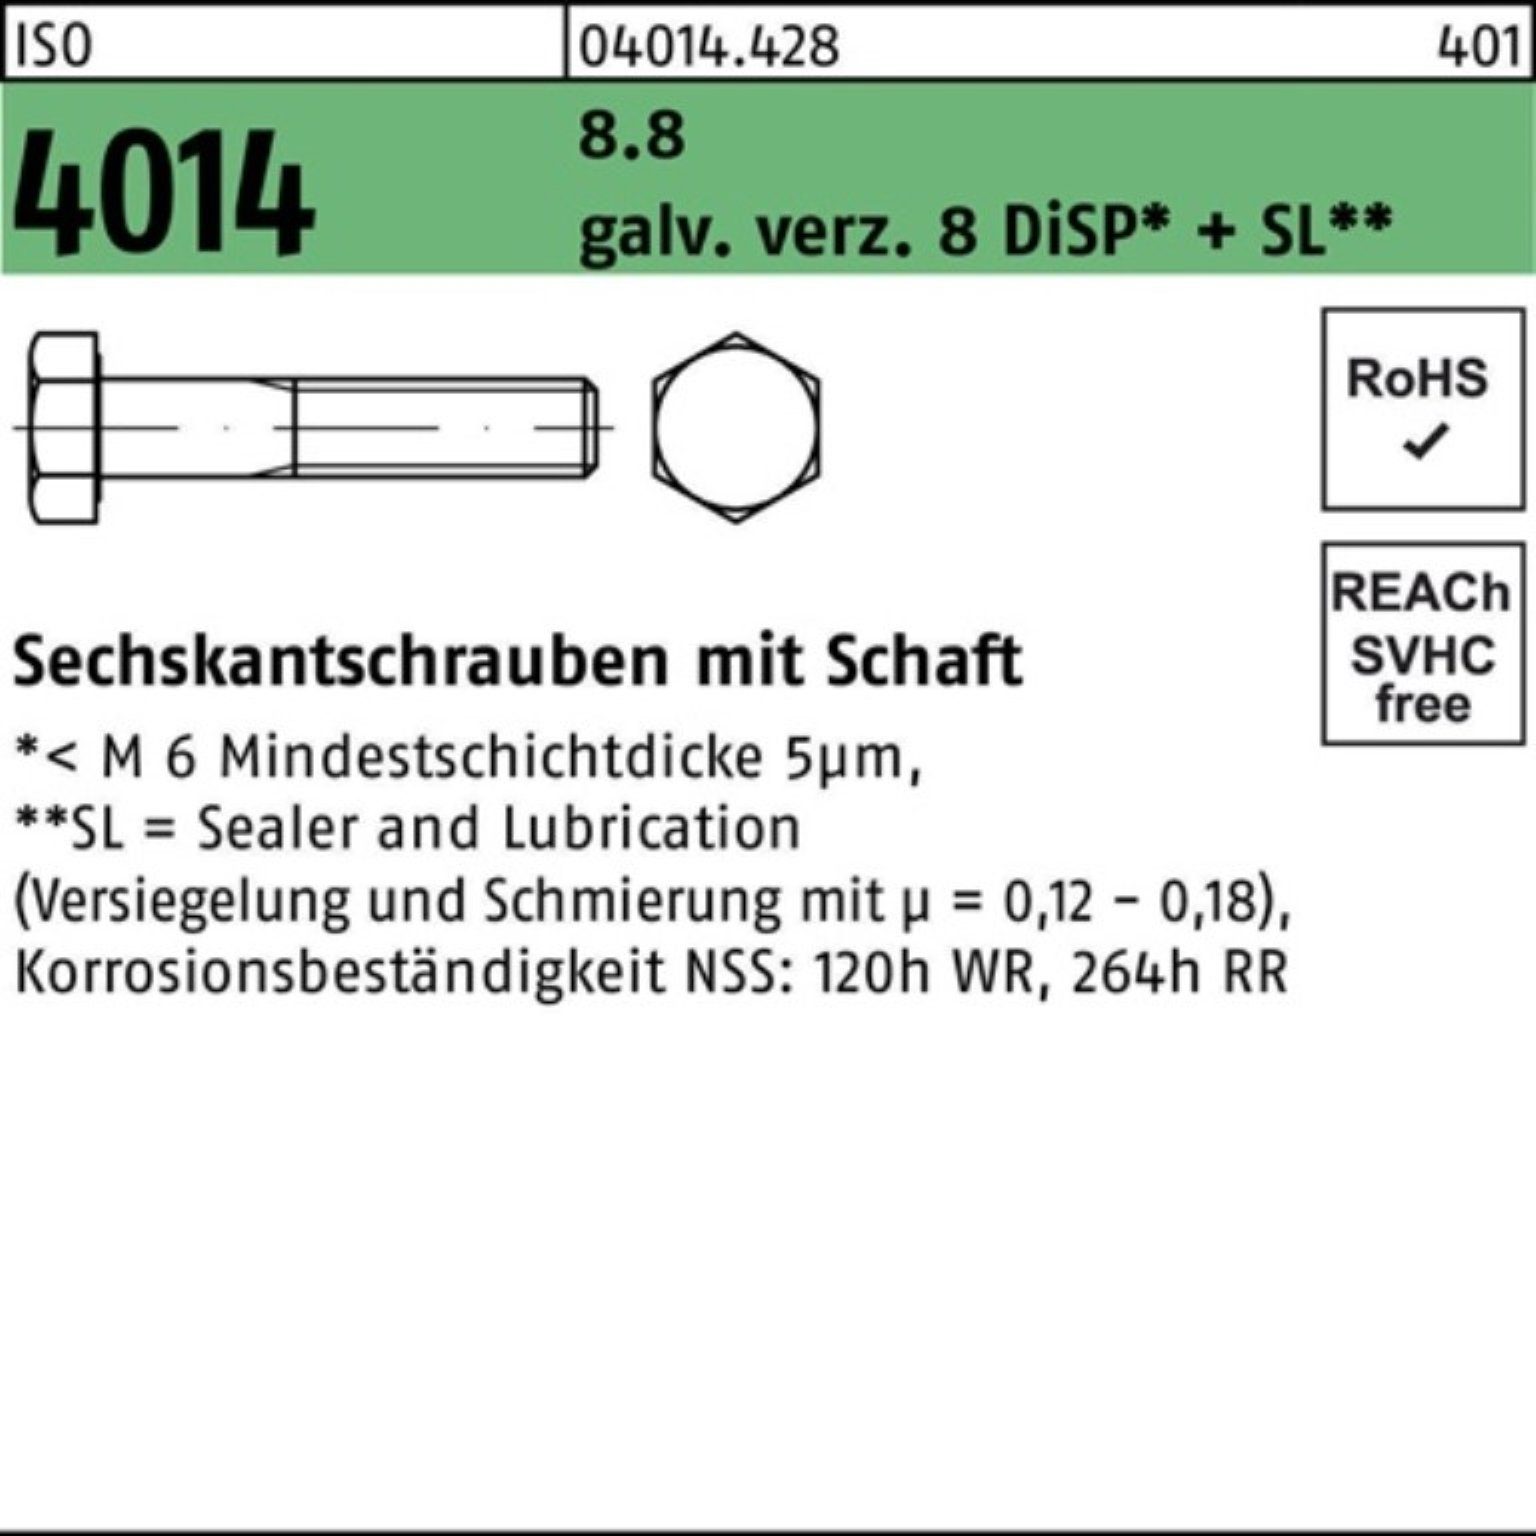 Schaft ISO Bufab Sechskantschraube 4014 Sechskantschraube 8.8 8 Pack Di galv.verz. M8x85 100er